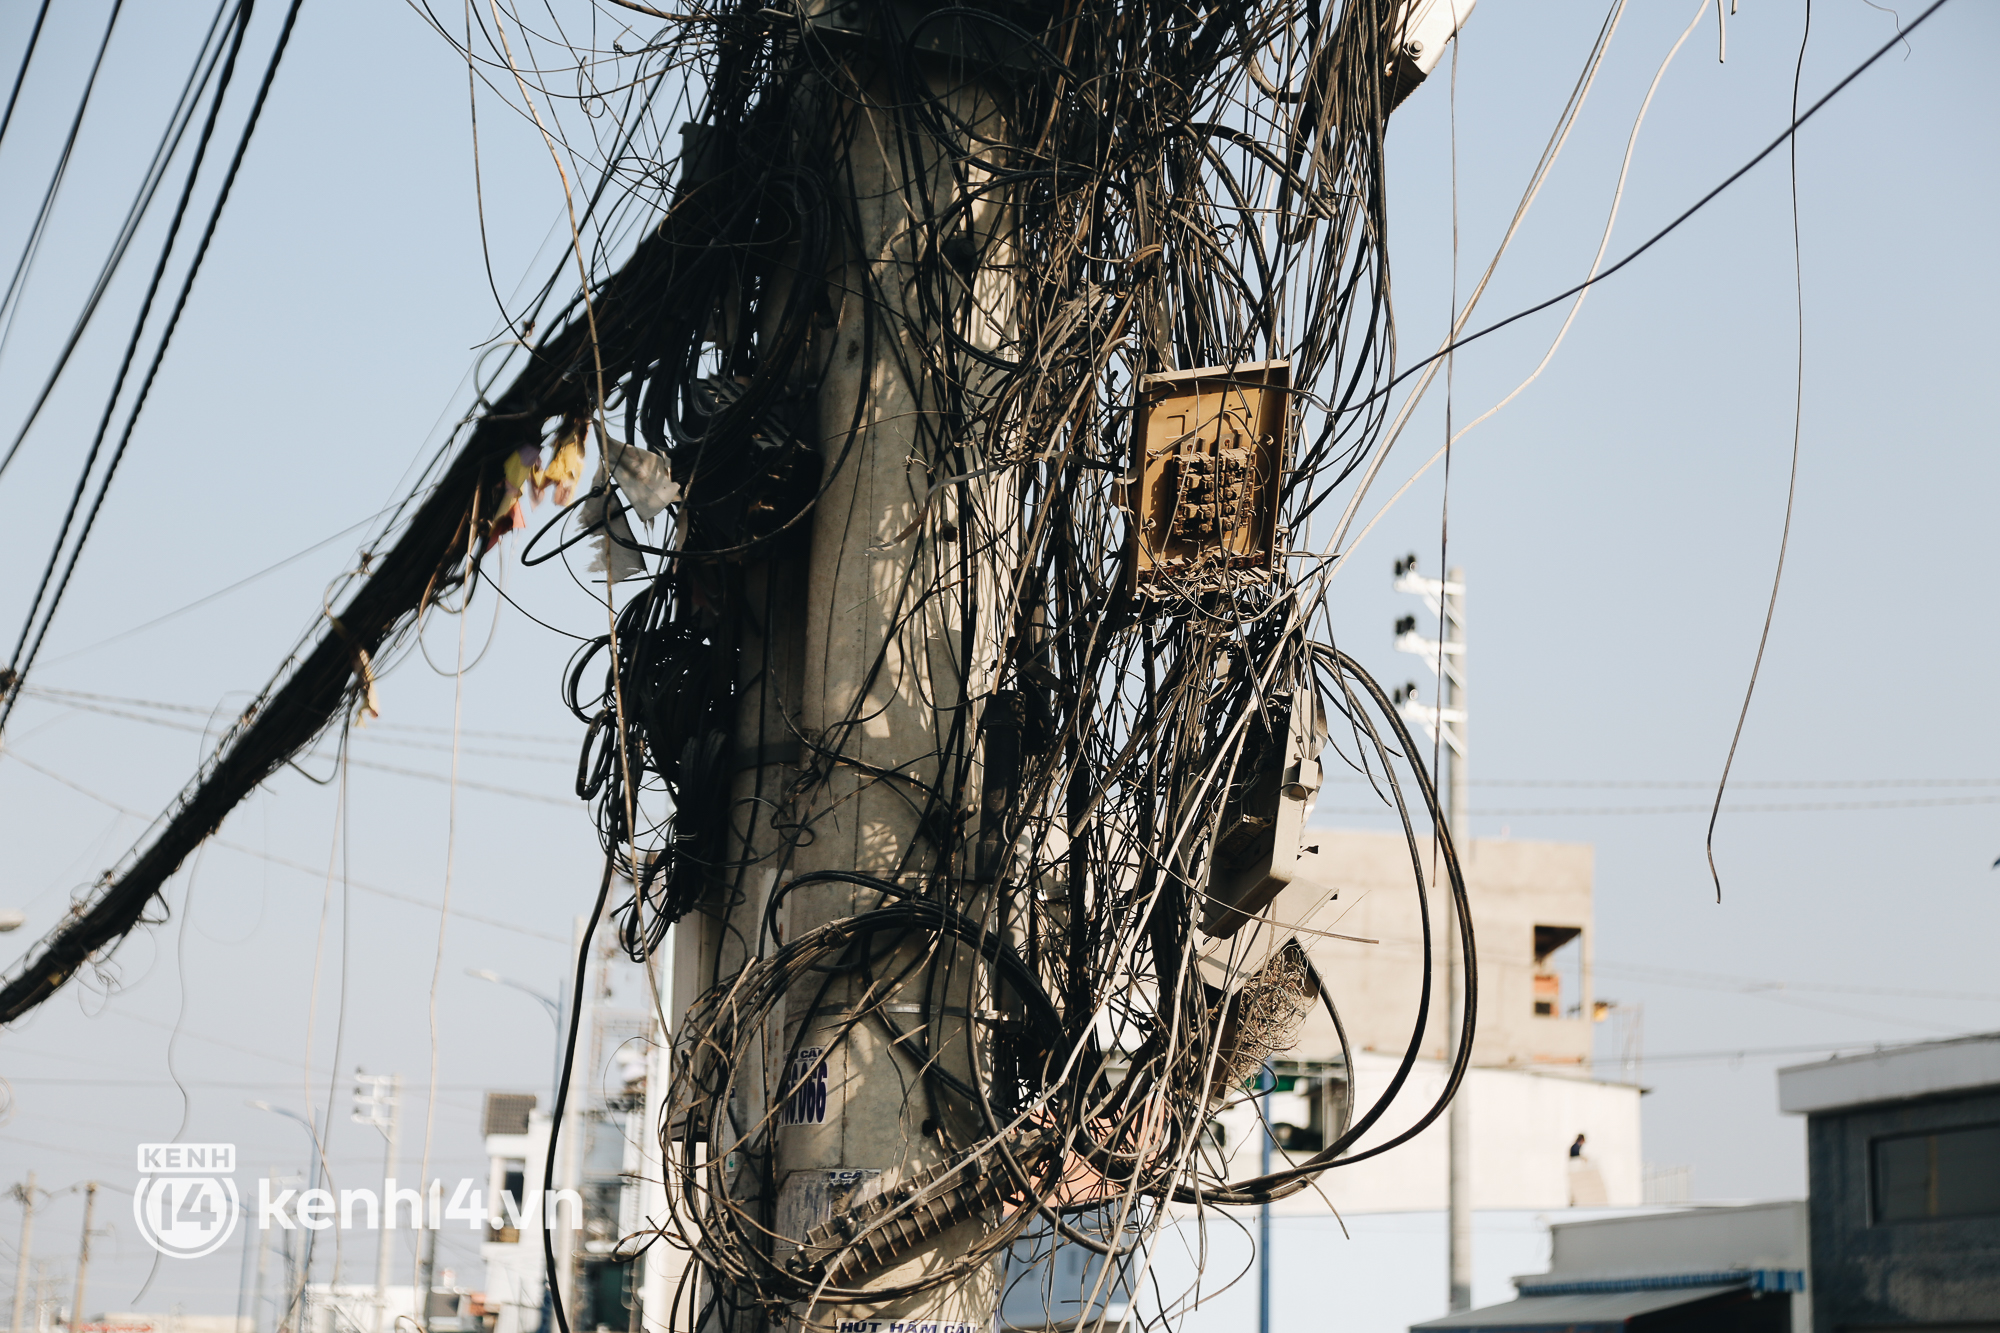 Hàng trăm cột điện bị bỏ quên giữa đường ở Sài Gòn, người dân nín thở luồn lách - Ảnh 4.